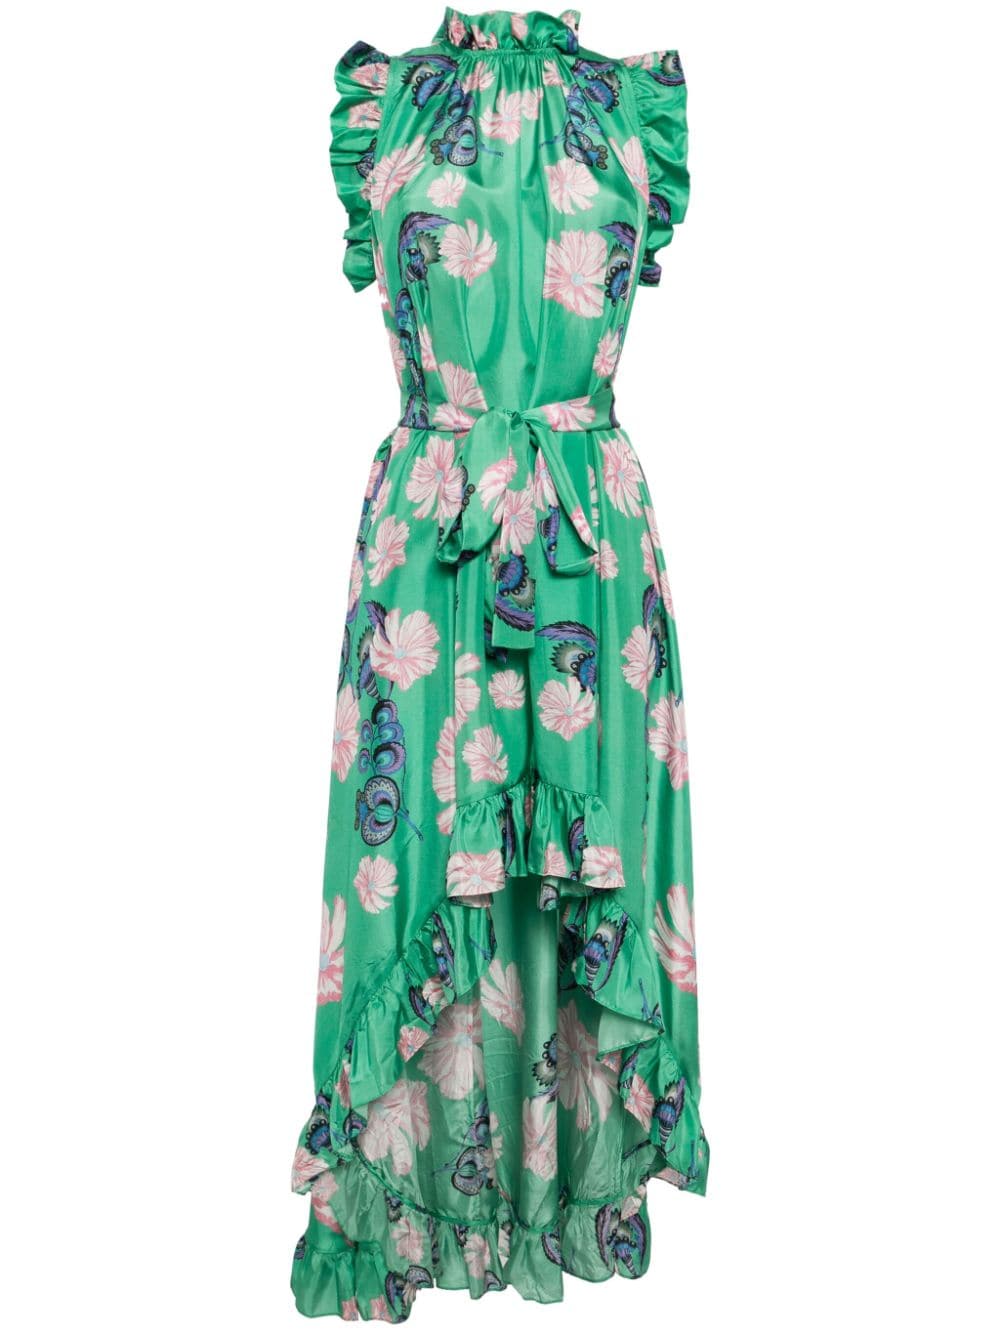 Cynthia Rowley Garden of Eden Maxi Dress - Green